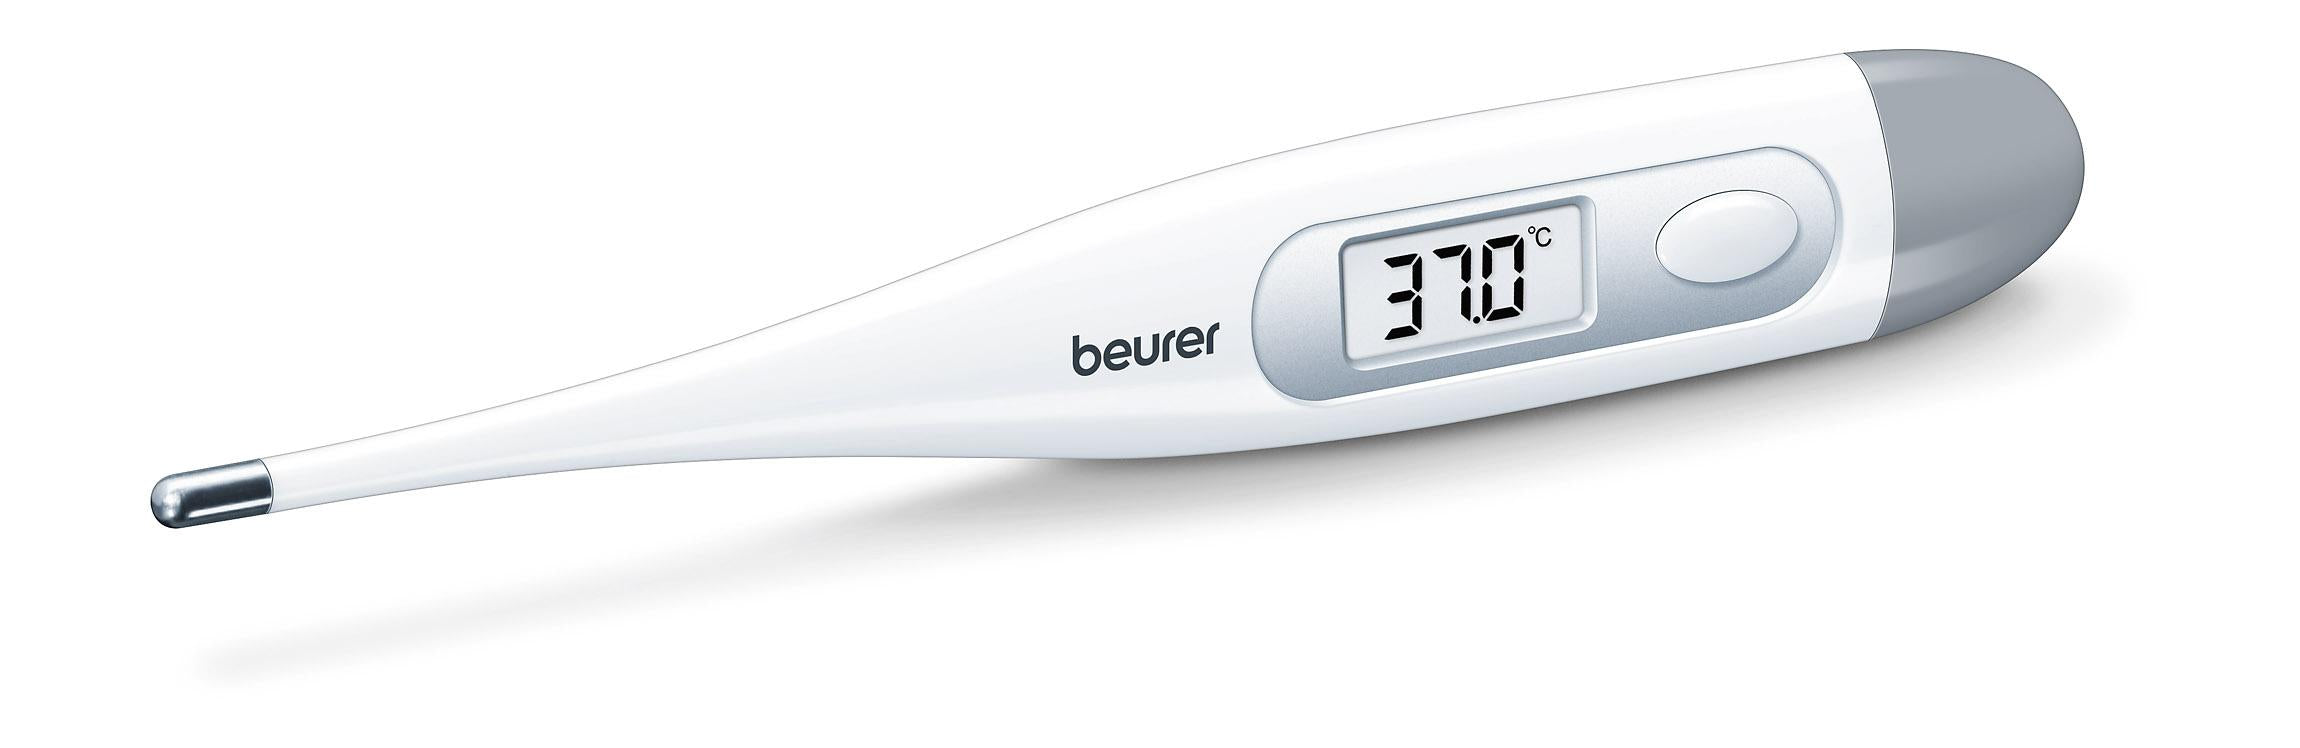 Thermomètre Médical Mercure Médical Classique A Pour La Mesure De